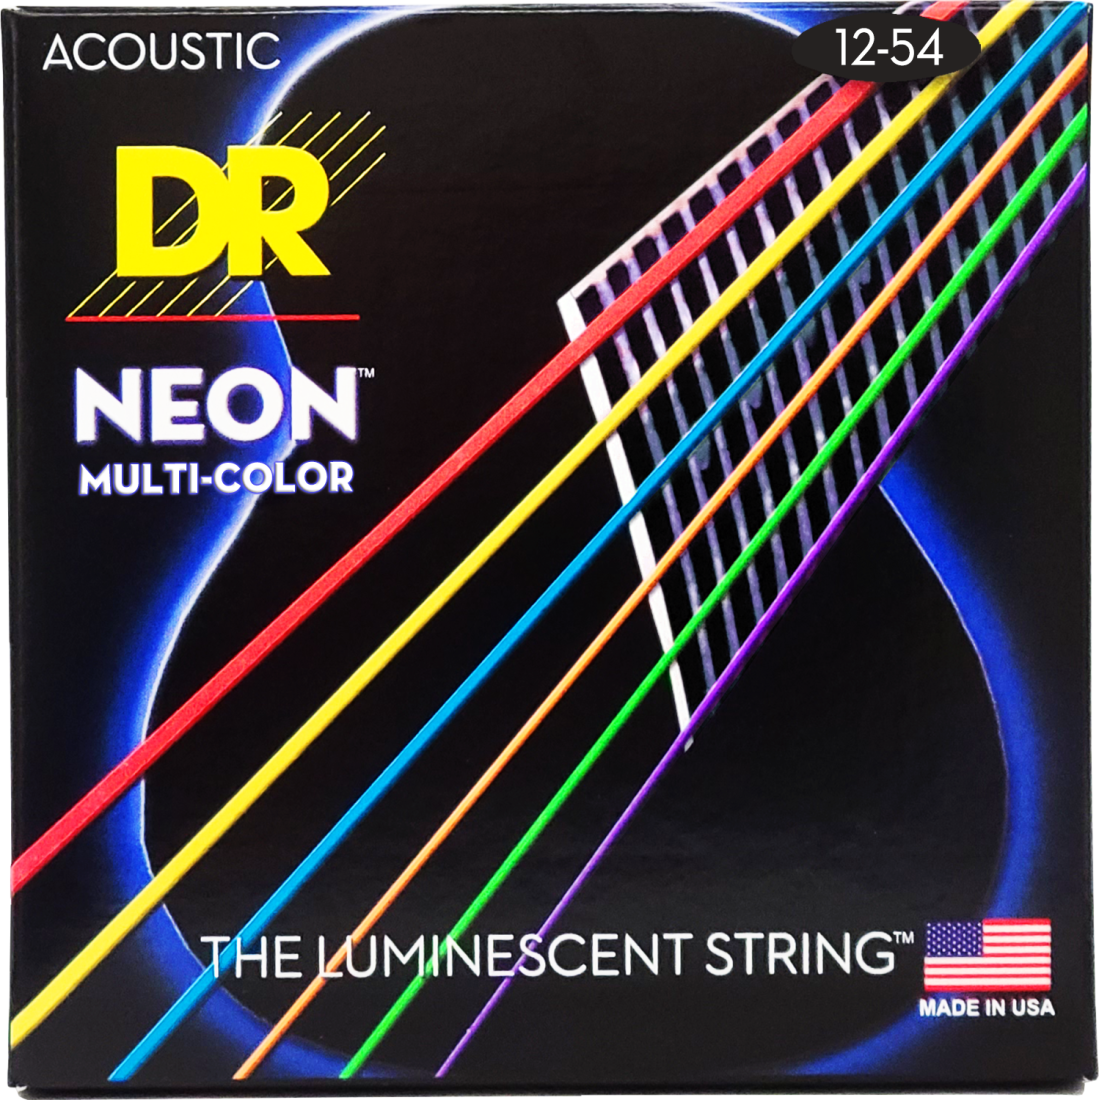 Multi-Color Neon Acoustic Guitar String Set - 12-54